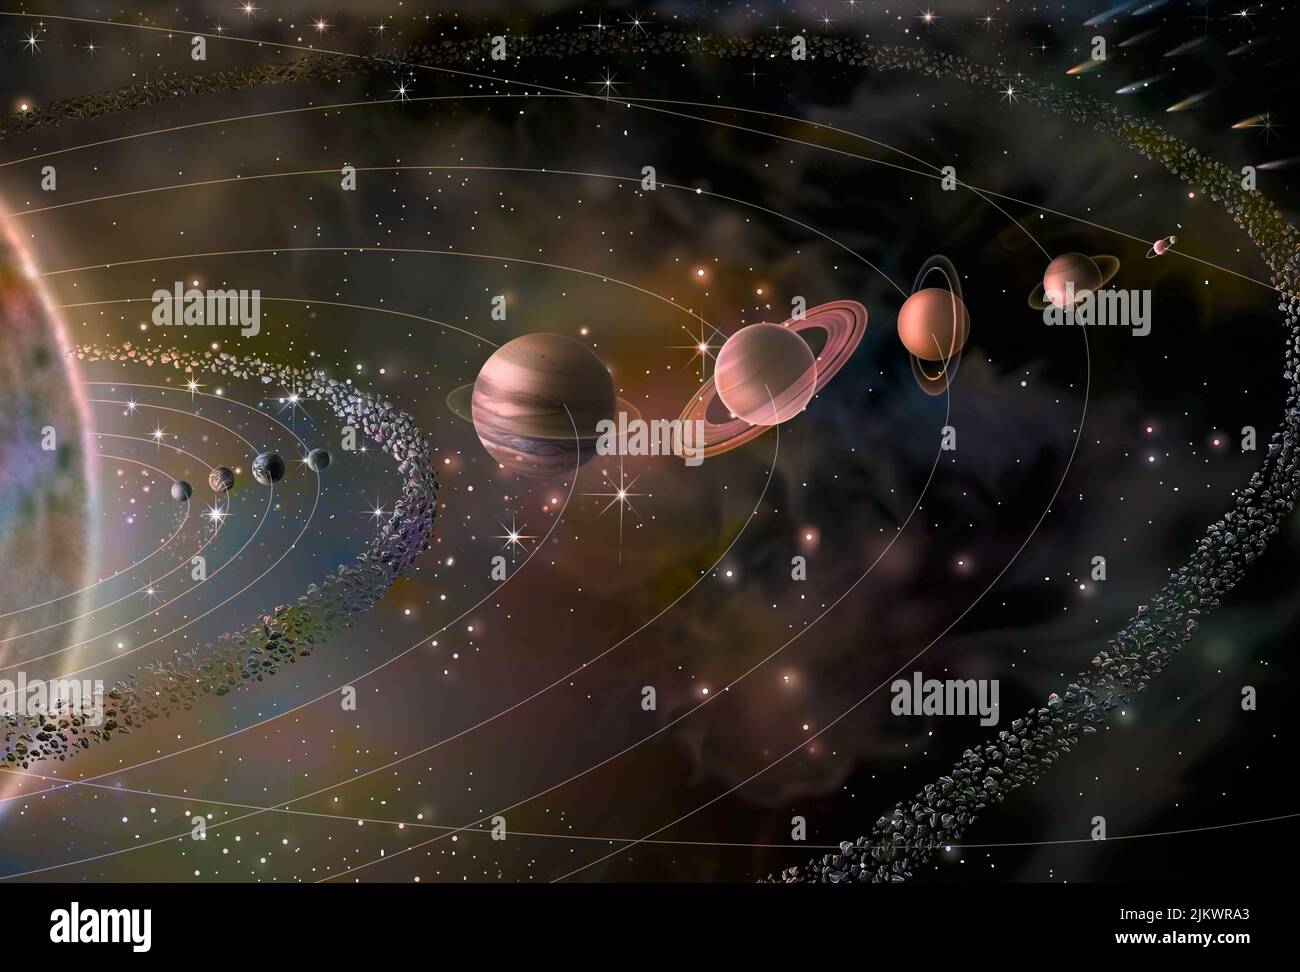 Sonnensystem mit seinen neun Planeten (Merkur, Venus, Erde, Mars, Jupiter, Saturn, Uranus, Neptun, Pluto) und der Sonne. Stockfoto